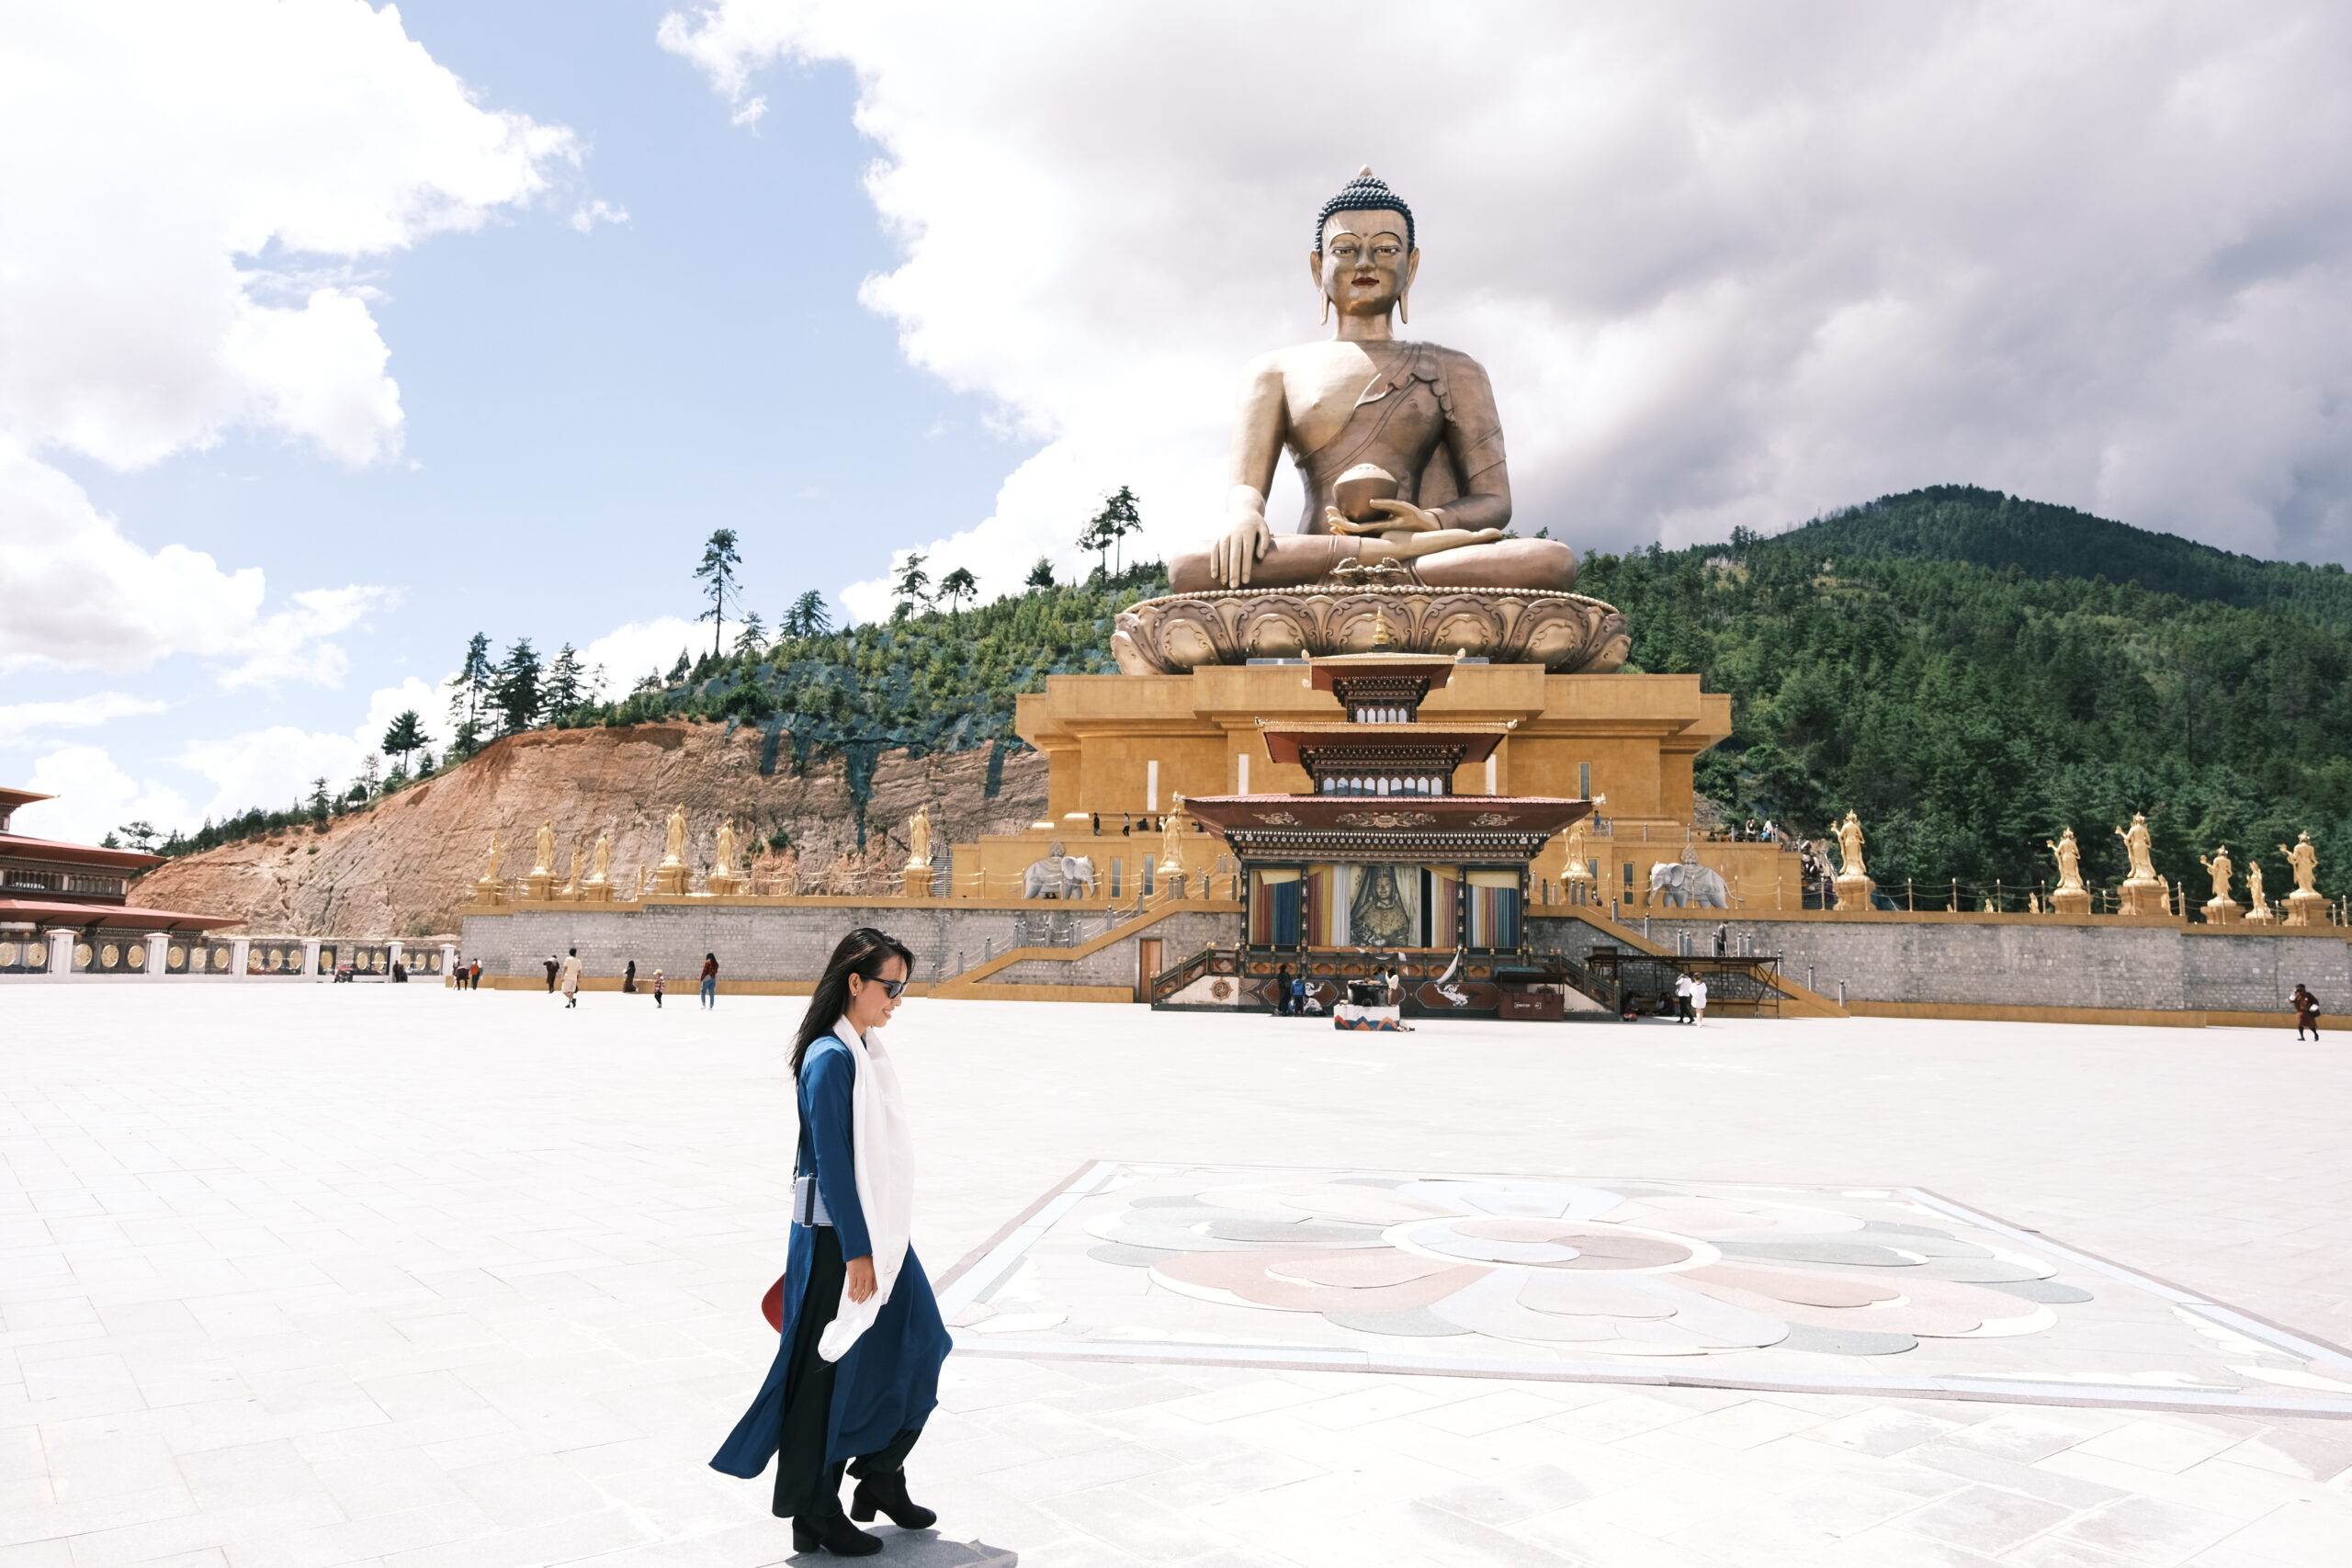 Bay thẳng đặc biệt mùa xuân 29.04-02.05 TPHCM- Bhutan: Paro Punakha Thimphu